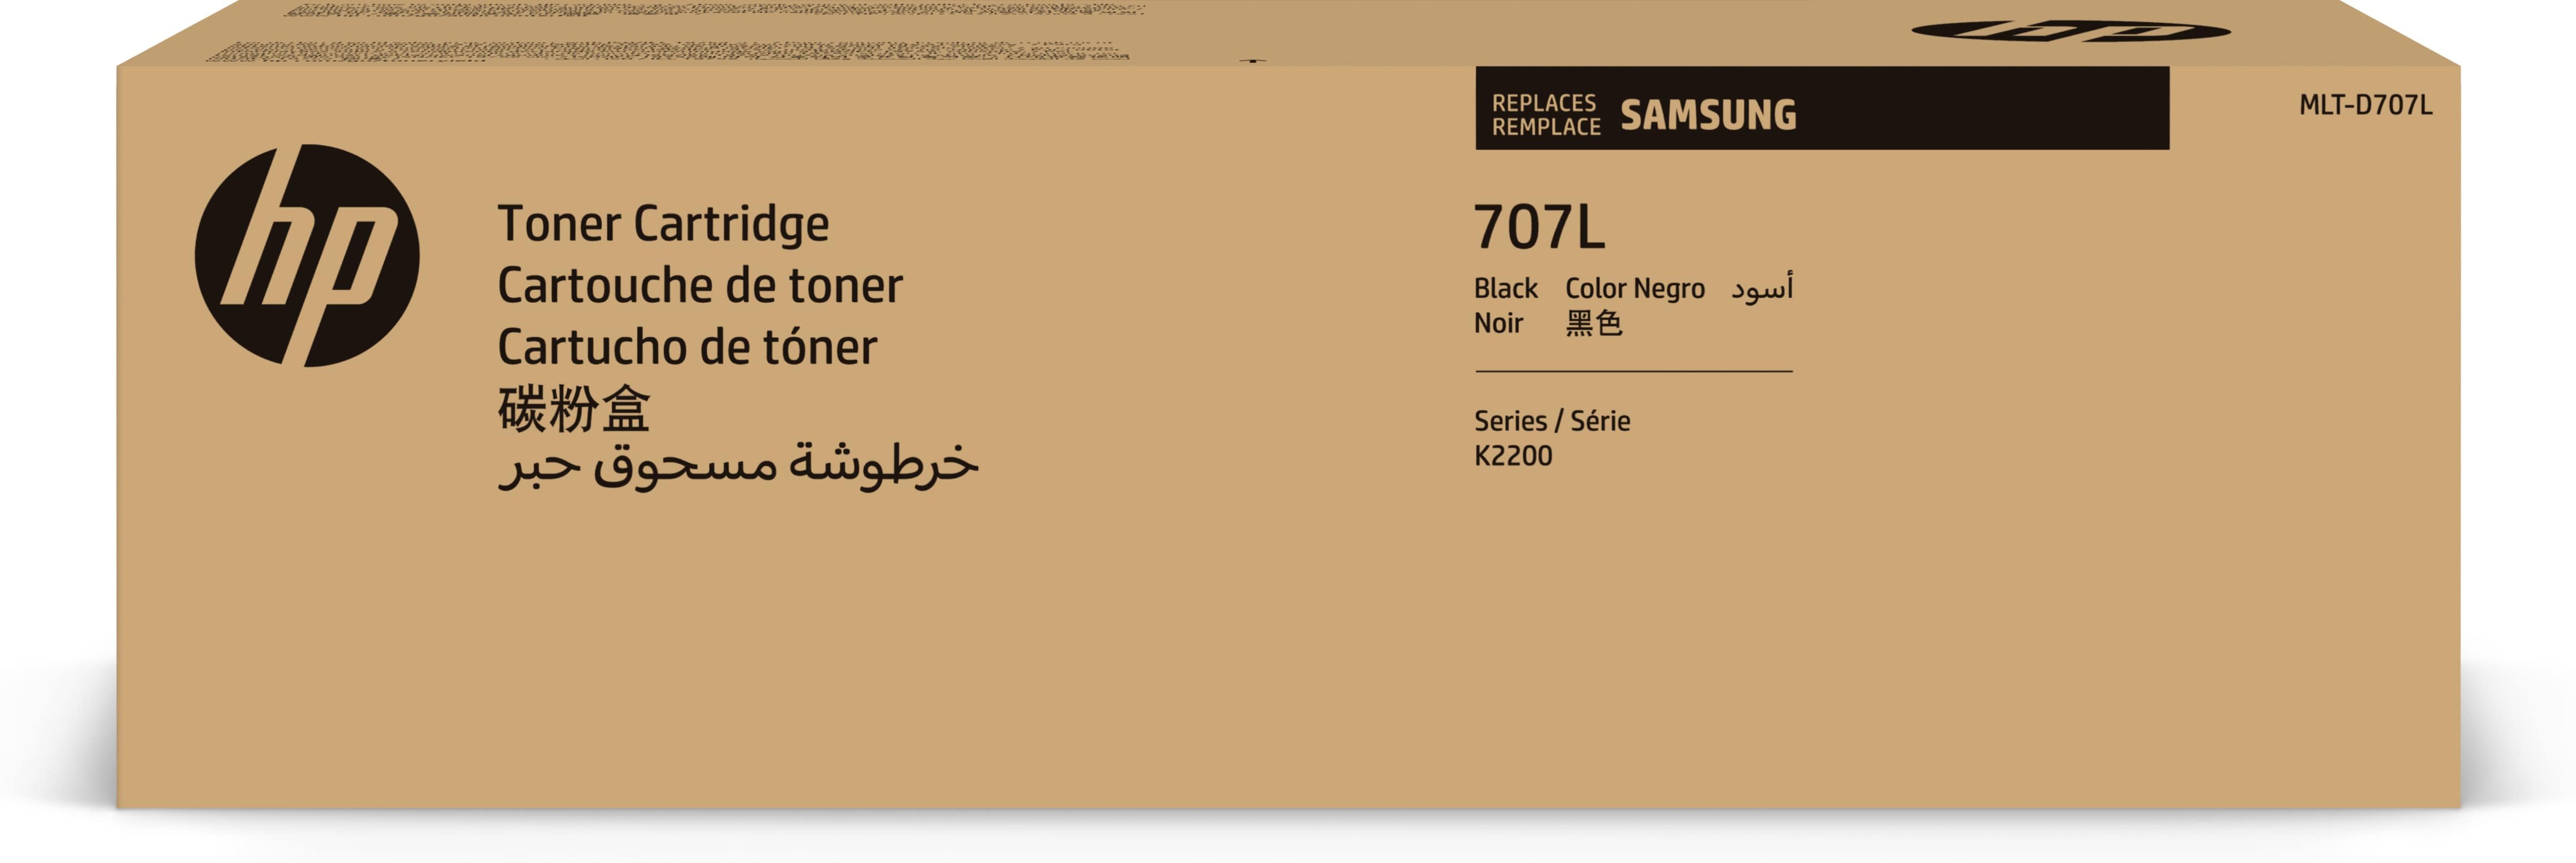 Samsung Toner MLT-D707L / SS775A Schwarz